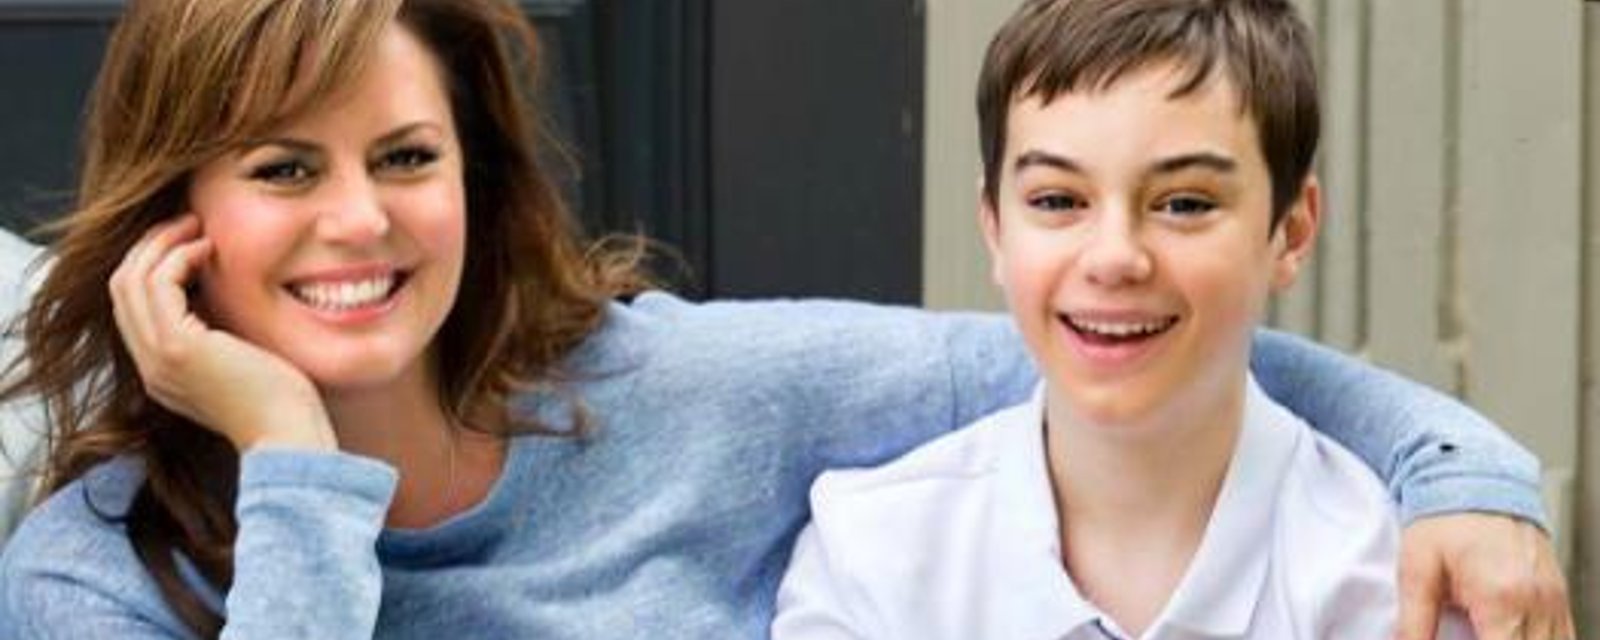 Magnifique nouvelle pour Benjamin, le fils autiste de Patricia Paquin